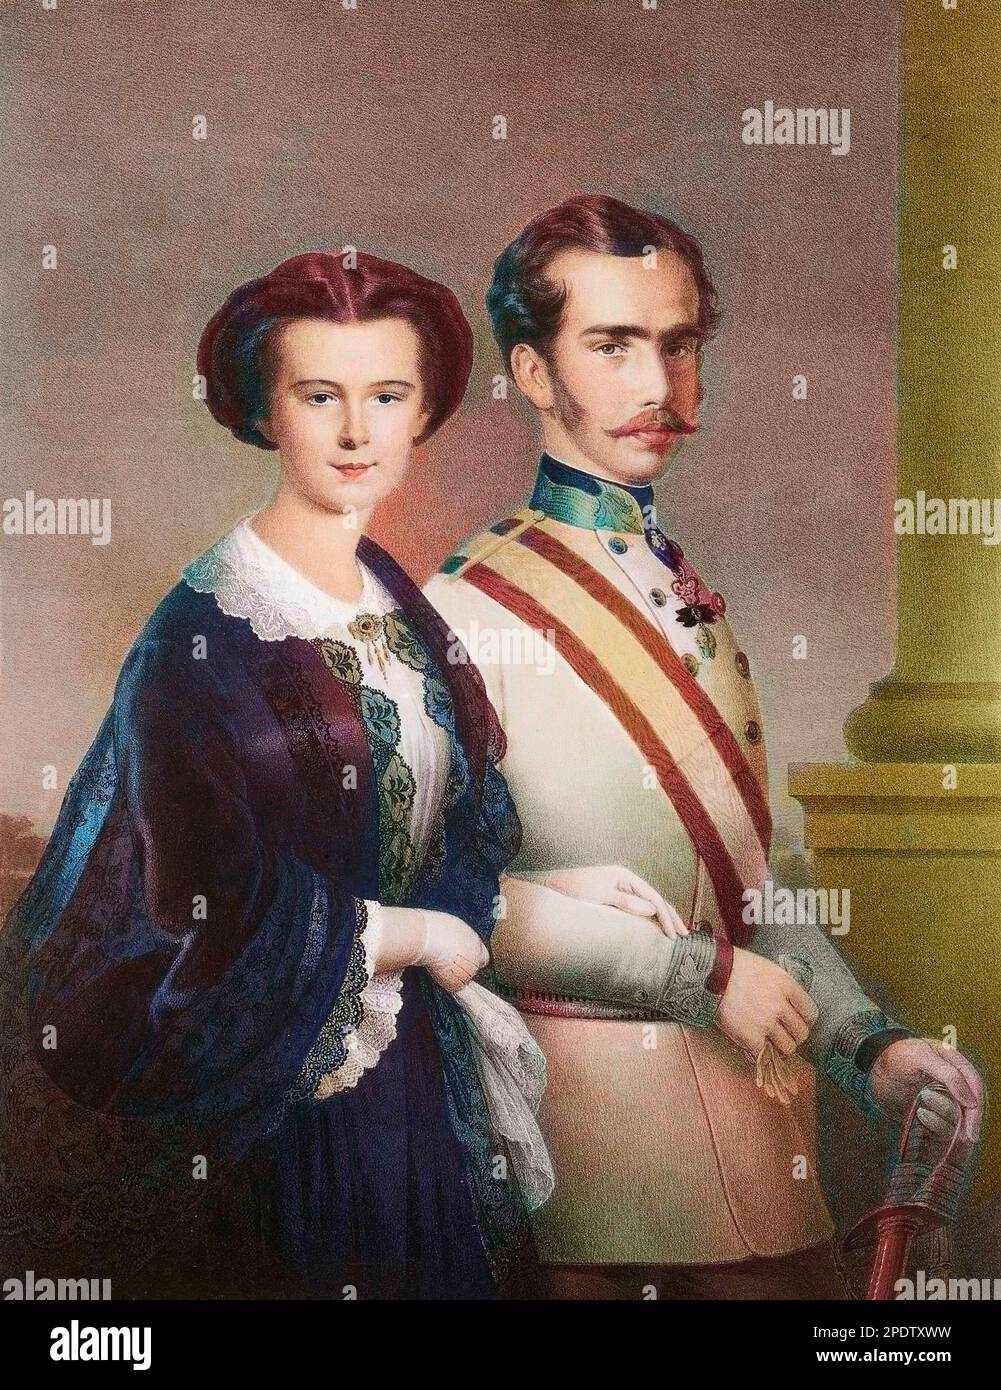 L'empereur Francois Joseph 1er d'Autriche (Francois-Joseph de Habsbourg) et l'imperatrice Elisabeth d'Autriche (Sissi) - Ritratto di Franz Joseph i d'Austria (,1830-1916), Imperatore d'Austria e sua moglie Elisabeth d'Austria Sissi (1837-1898), Imperatrice d'Austria - Foto Stock